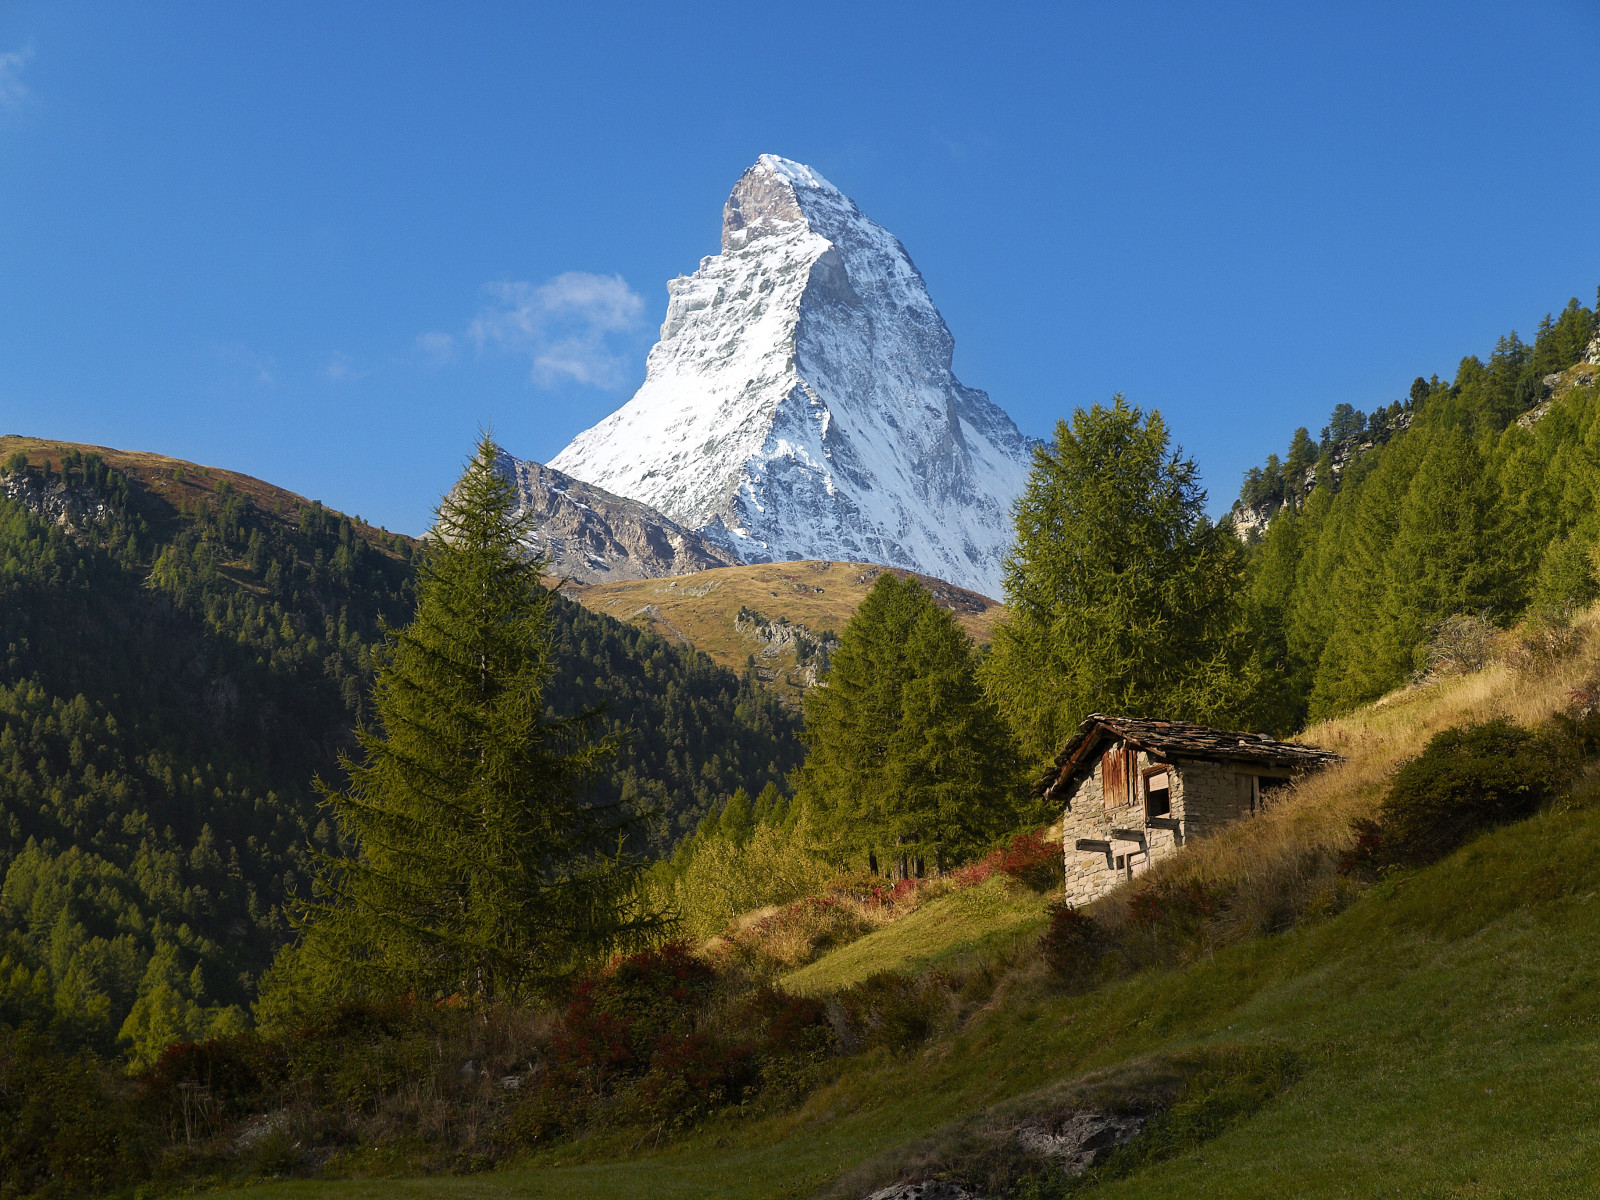 สีน้ำเงิน, ท้องฟ้า, บ้าน, ประเทศสวิสเซอร์แลนด์, Matterhorn, ต้นไม้, ภูเขา, ภูเขาแอลป์